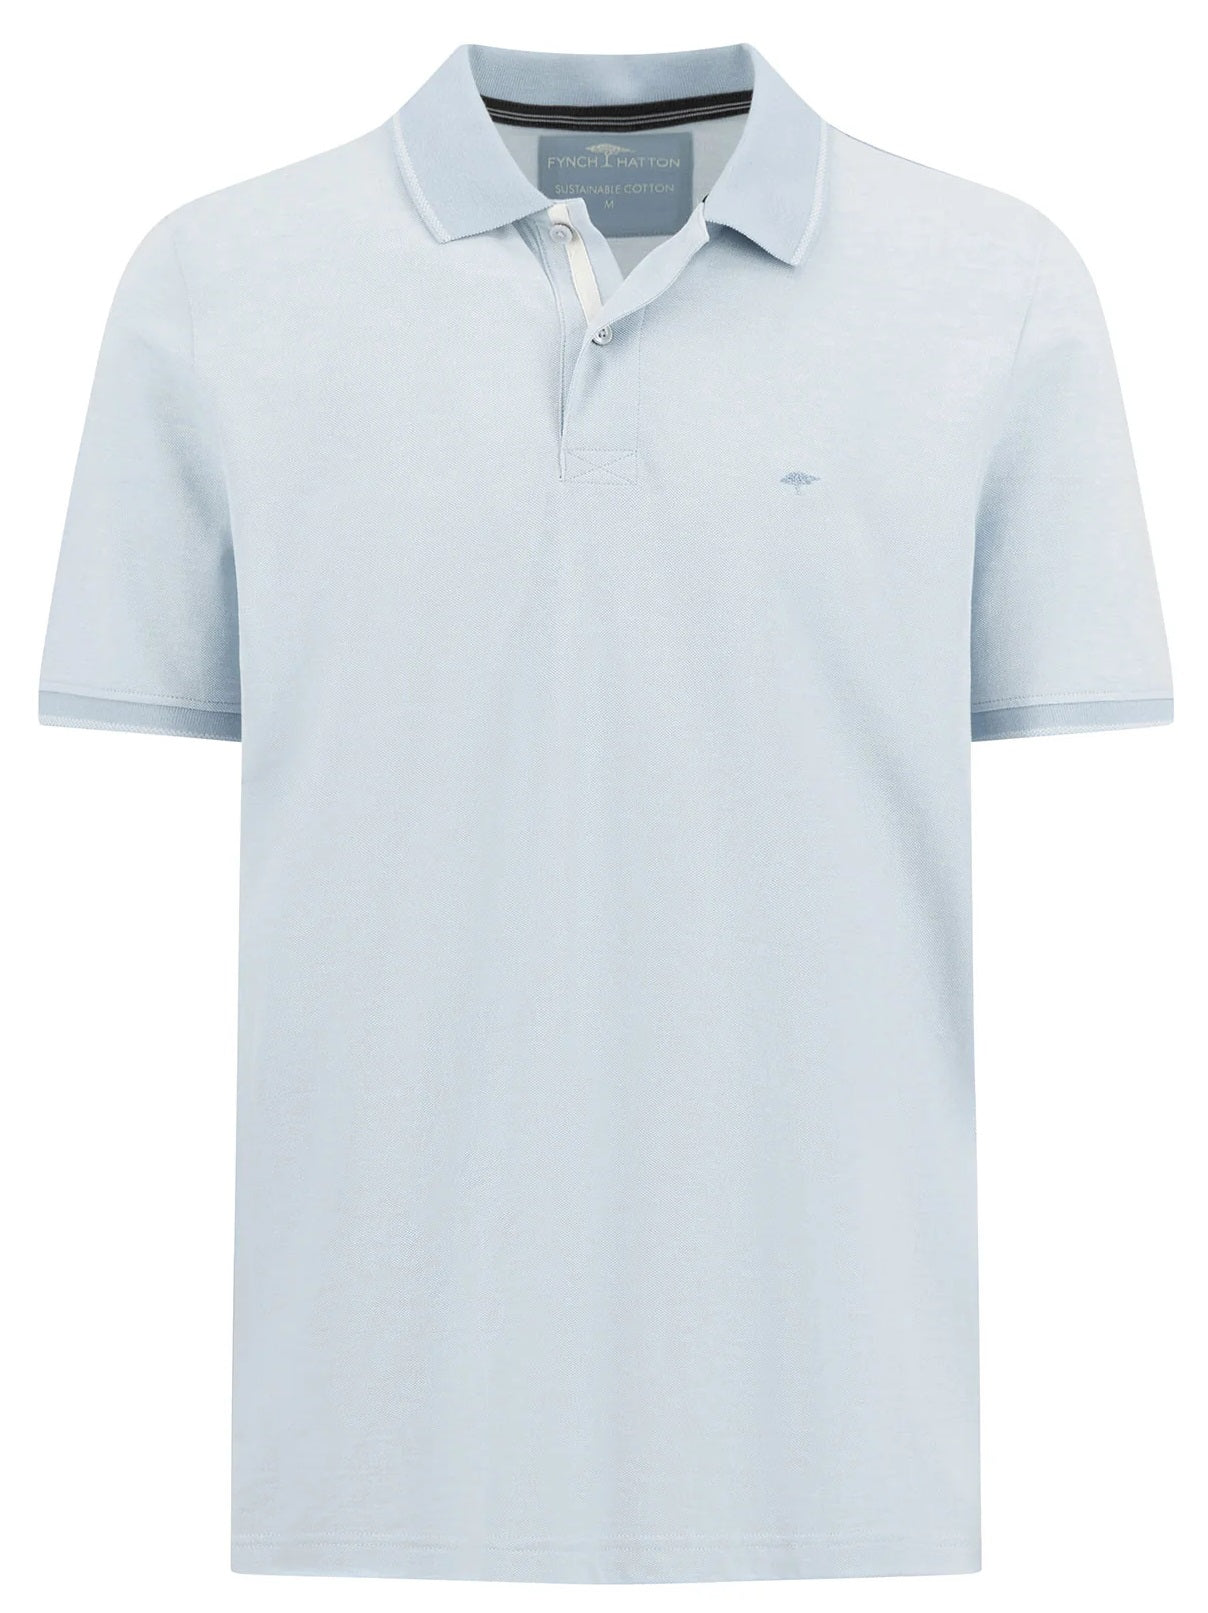 FYNCH HATTON Two Tone Pique Polo Shirt - Men's Soft Cotton – Summer Breeze